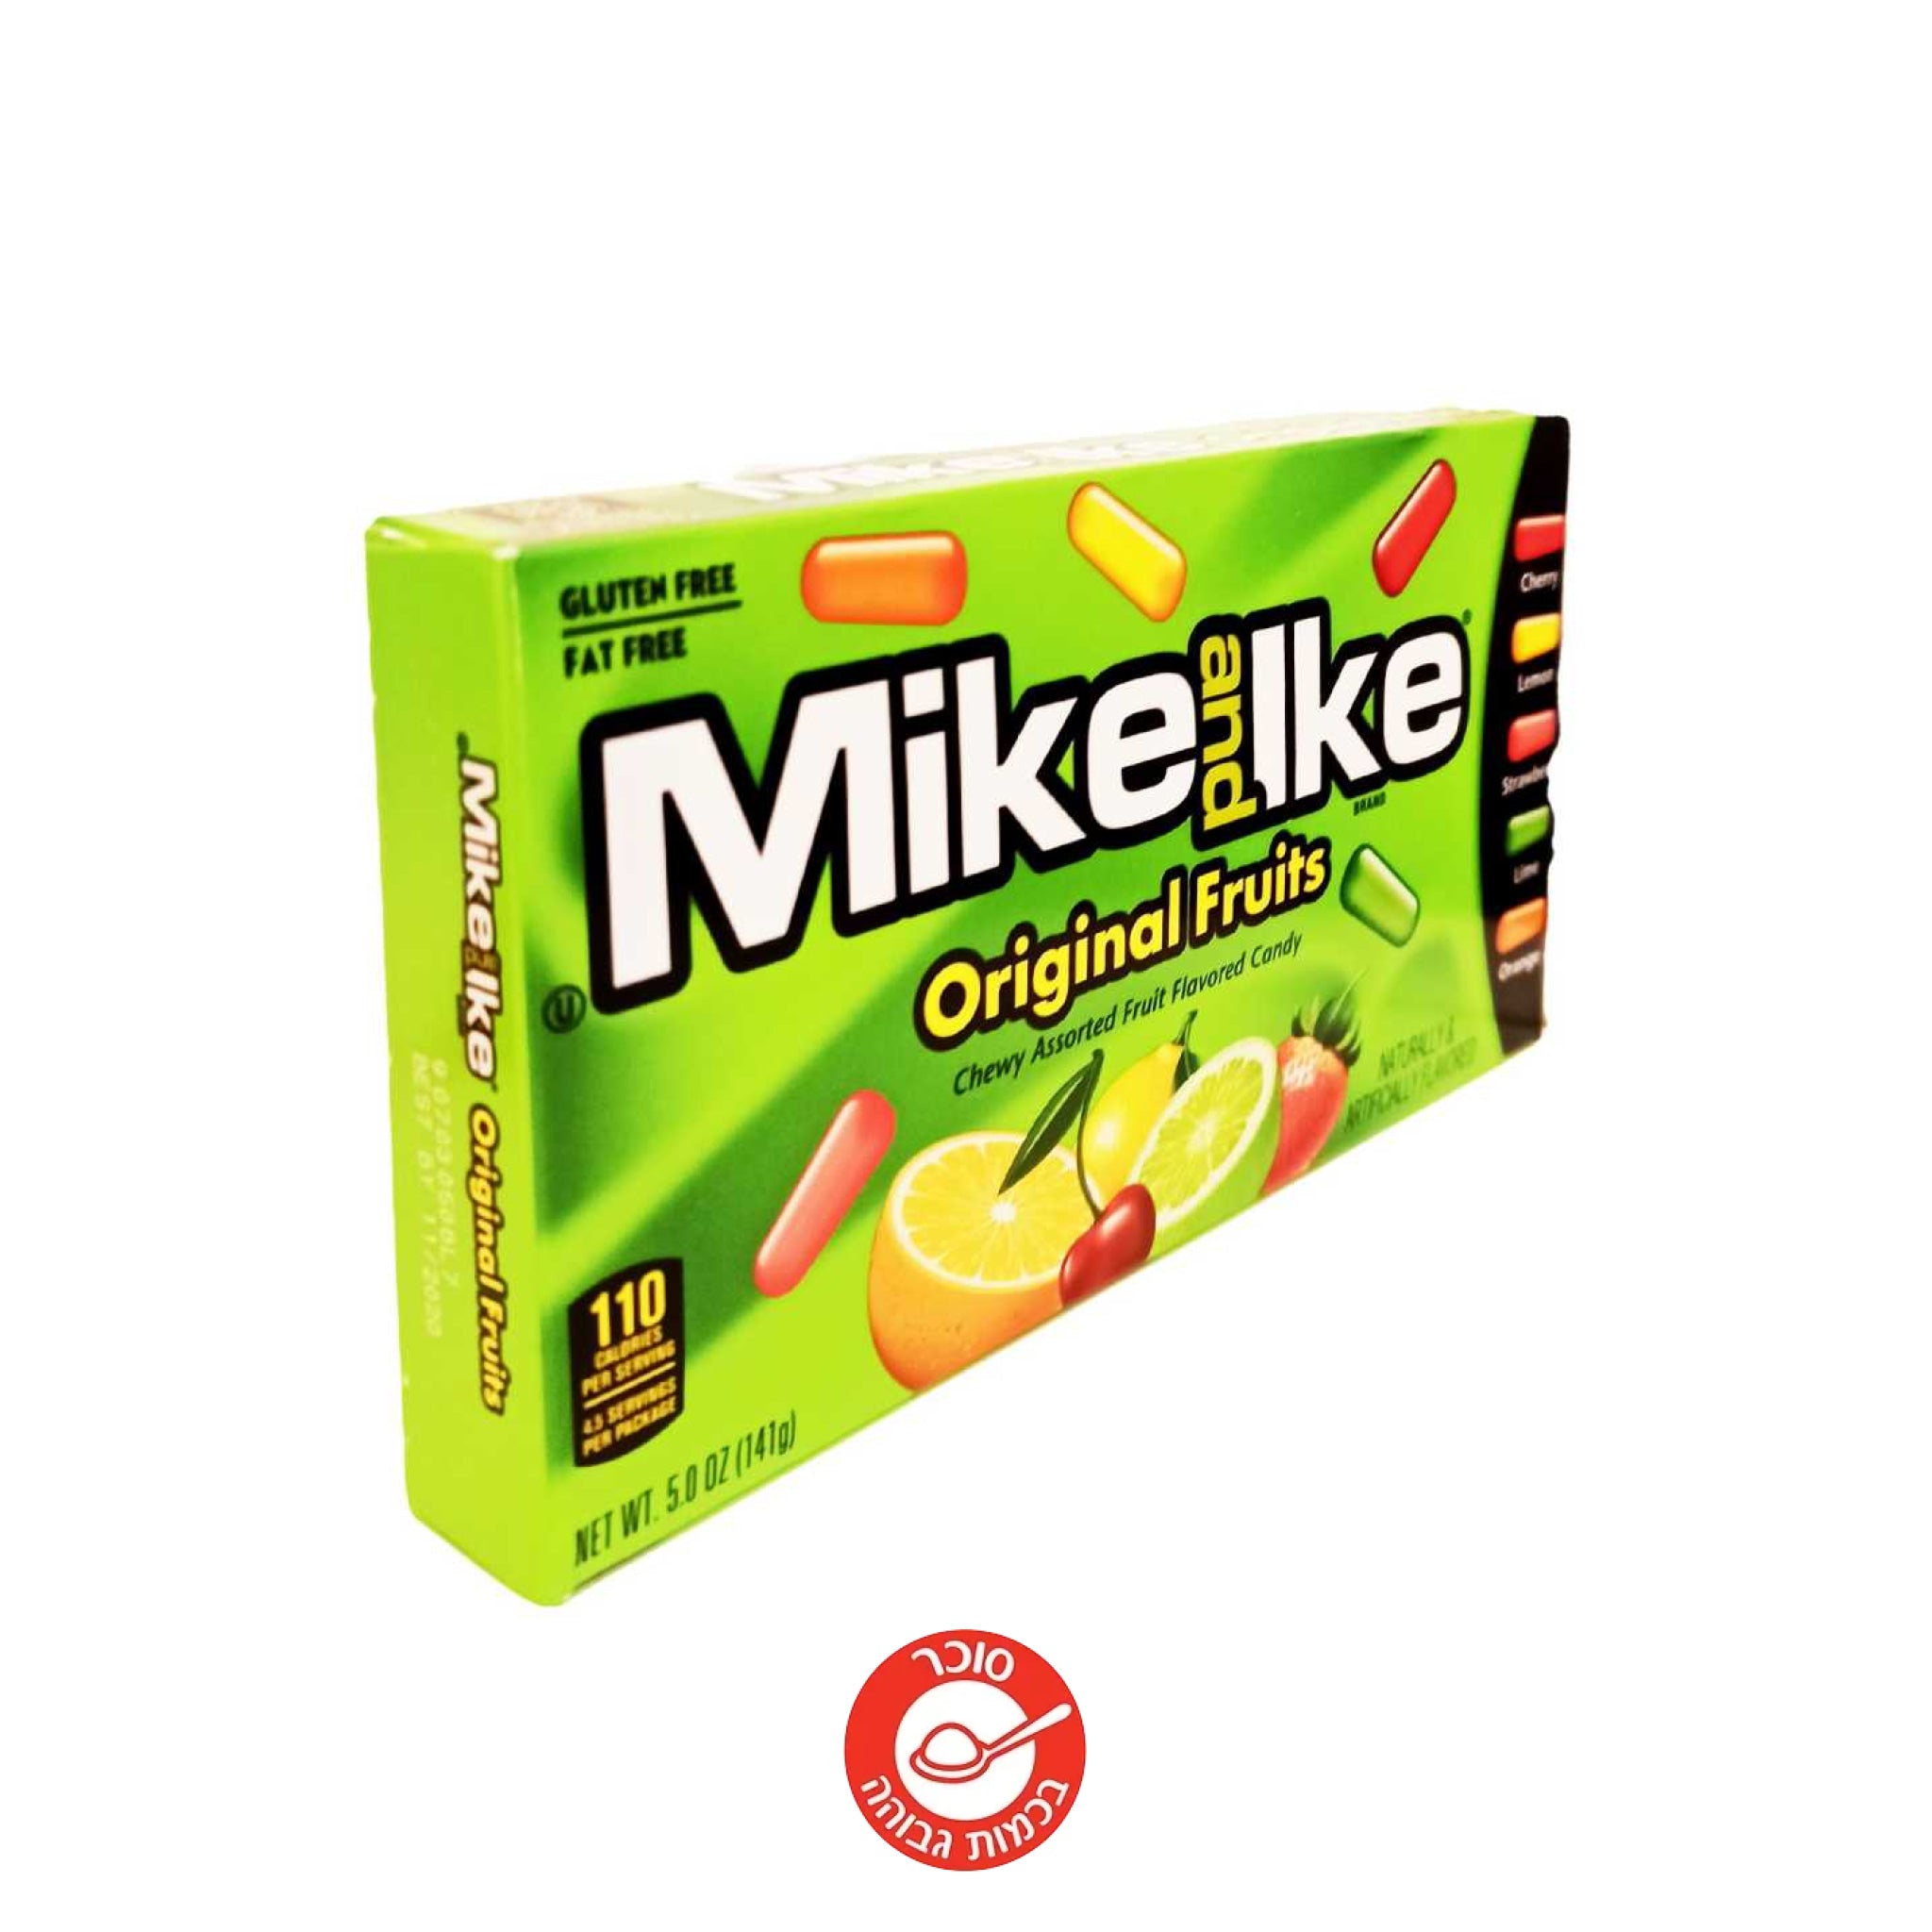 Mike And Ike - סוכריות בטעם פירות - טעימים